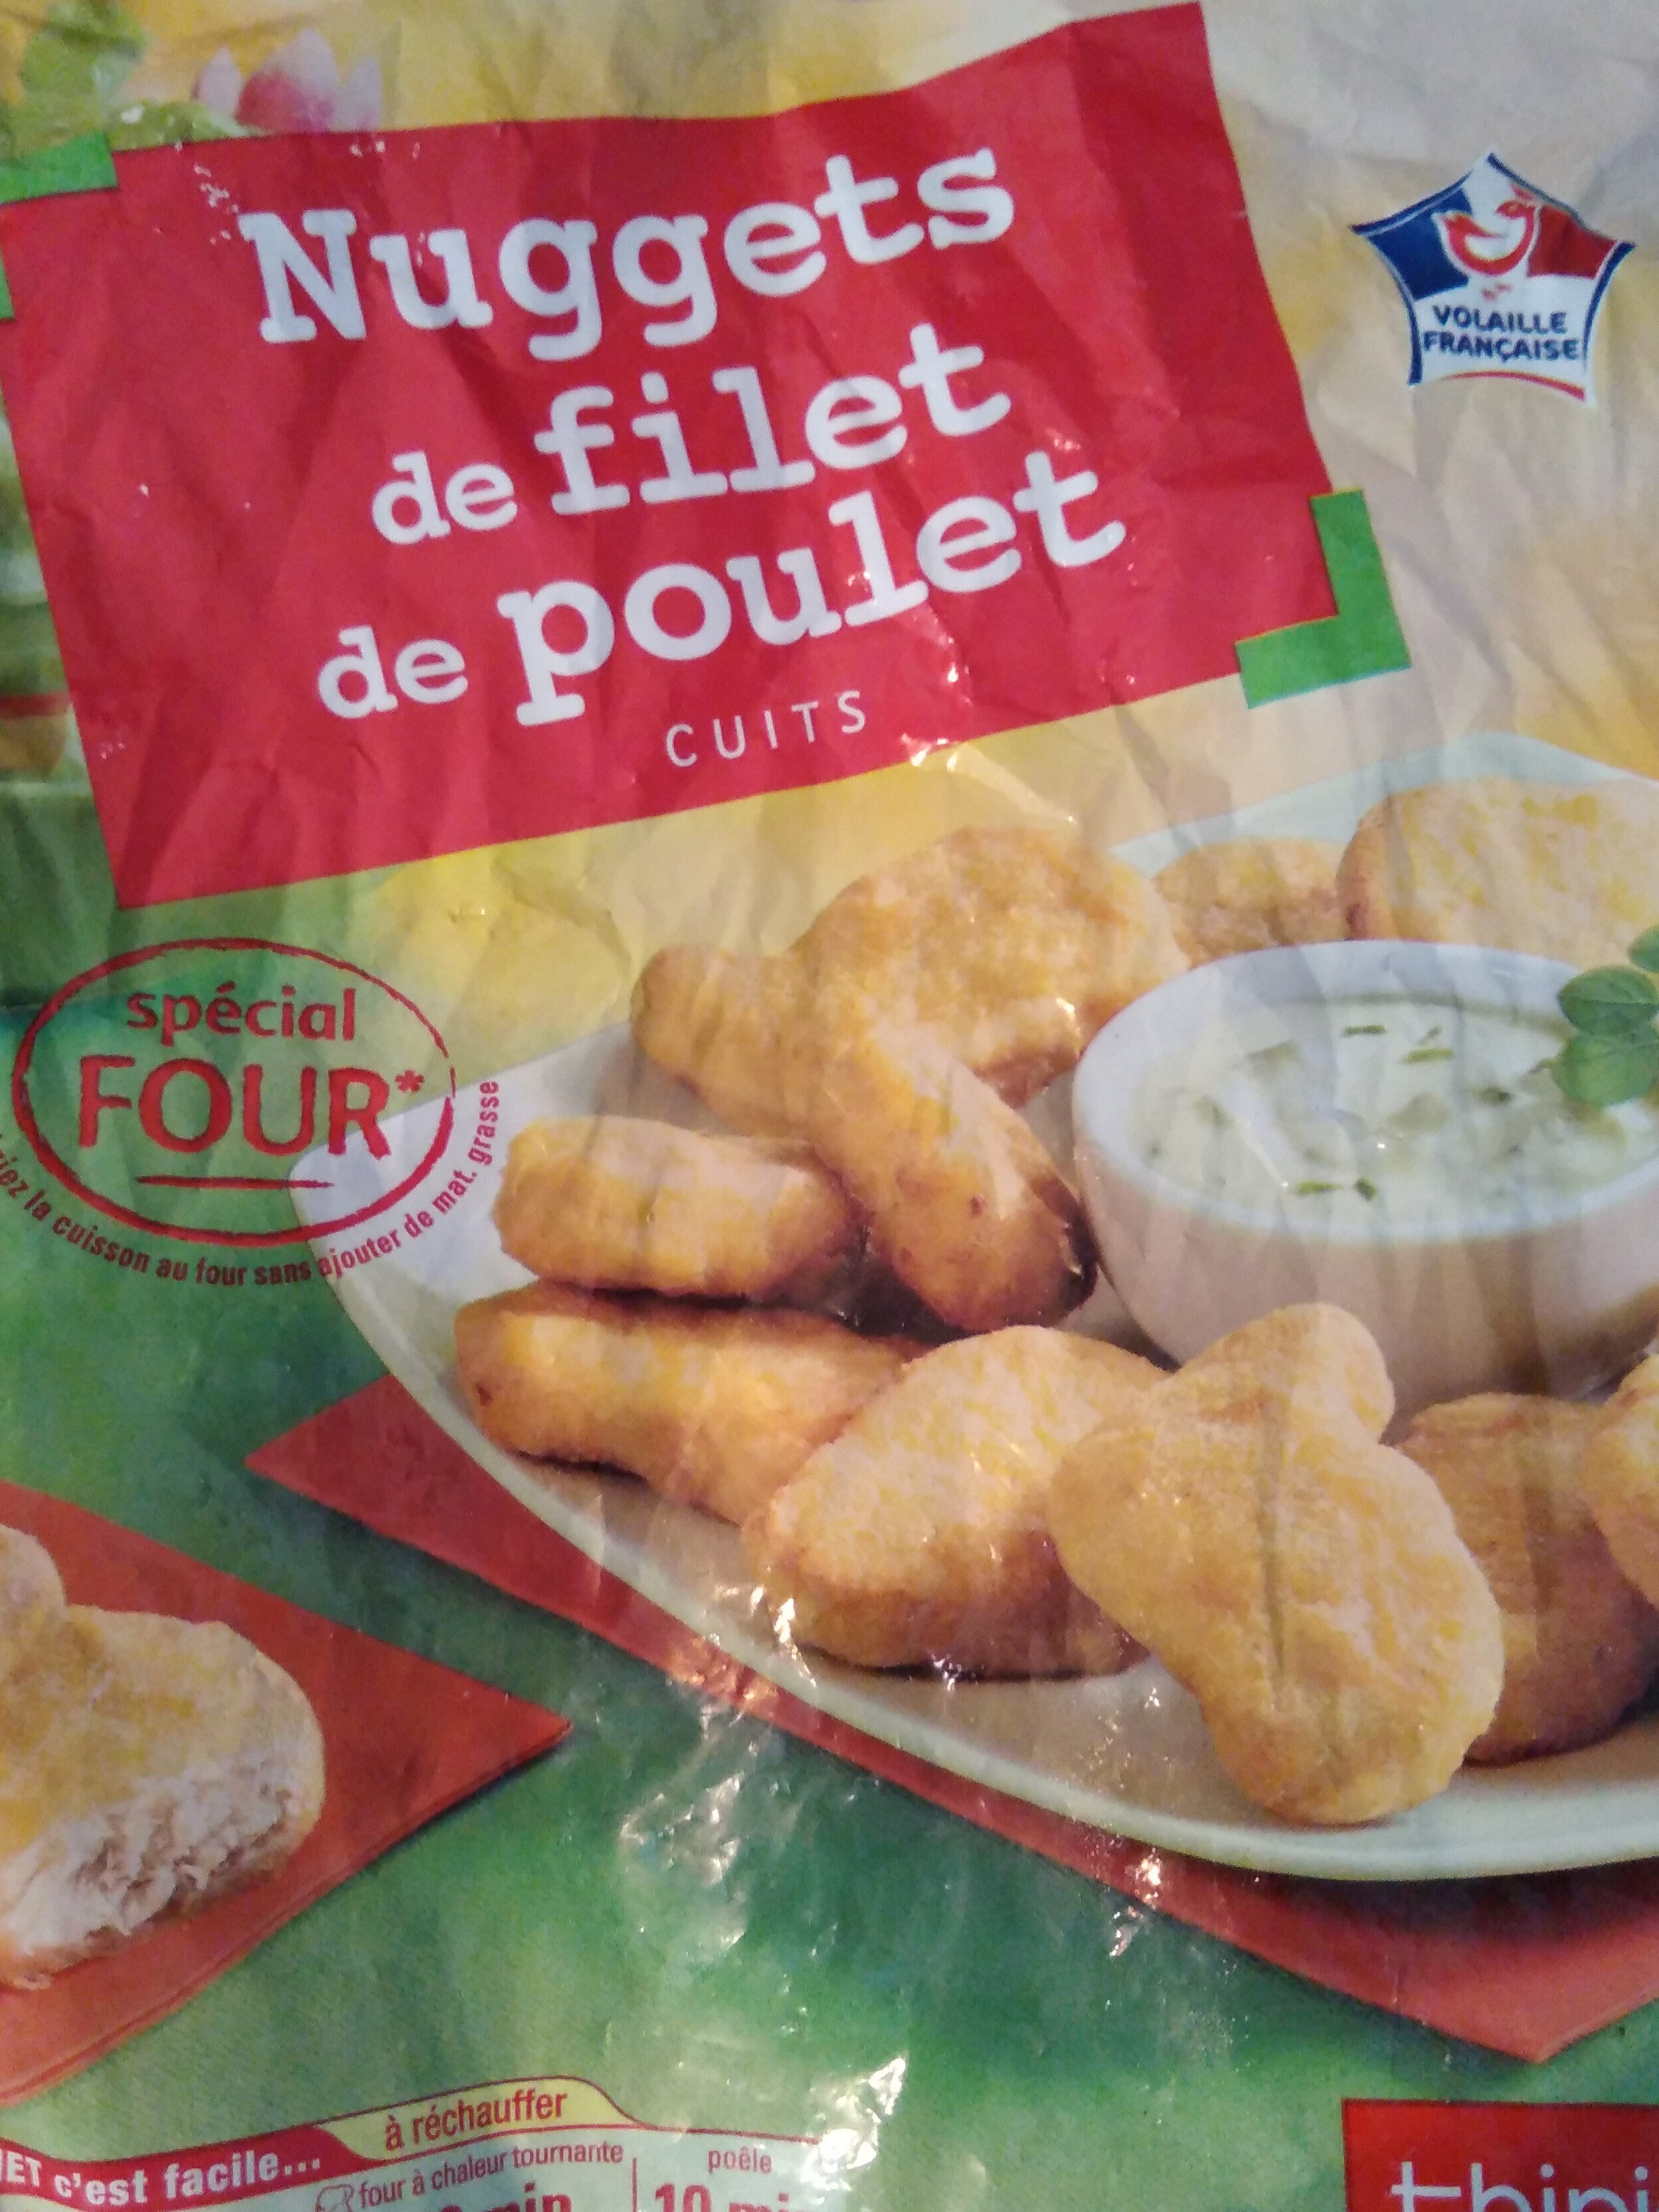 Nuggets de filet de poulet cuits - Produit - fr